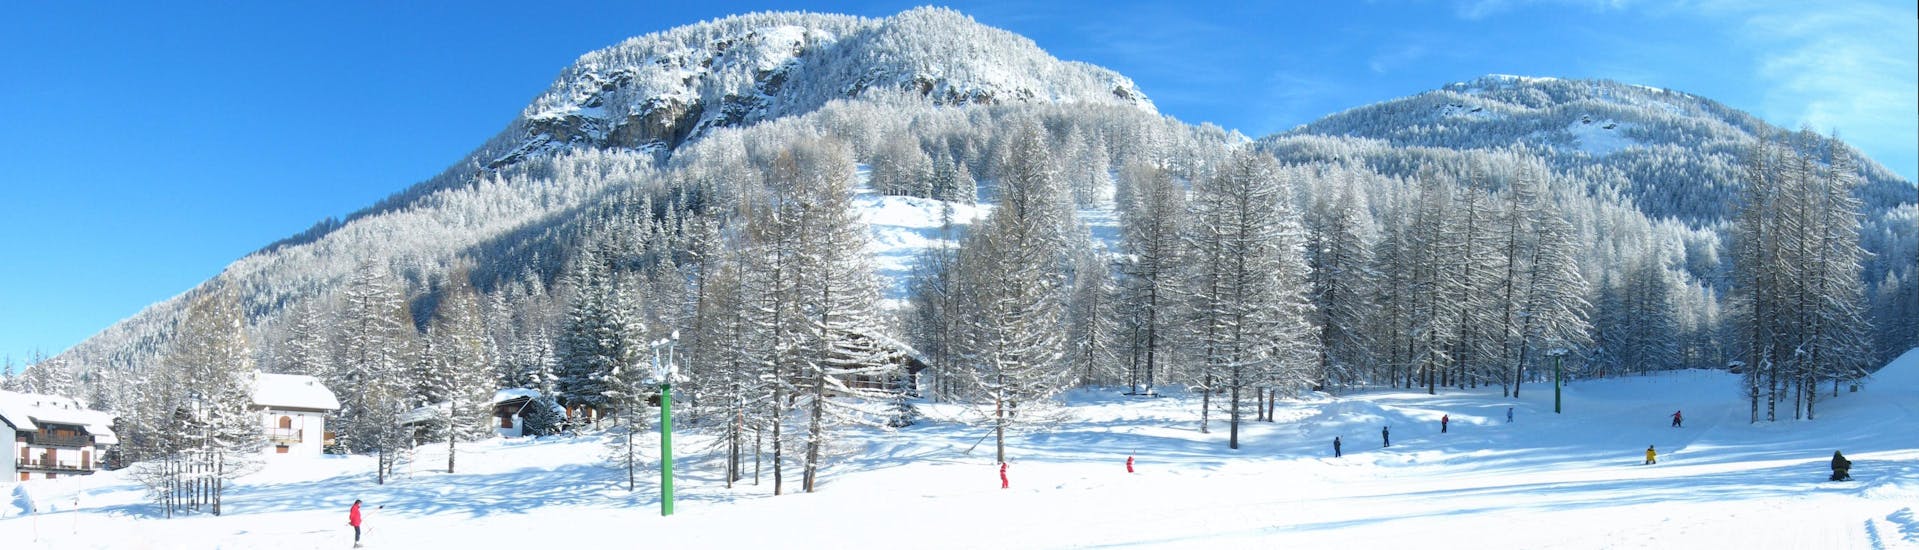 Vista sulle piste innevate di Pragelato, dove le scuole di sci locali offrono le loro lezioni di sci.